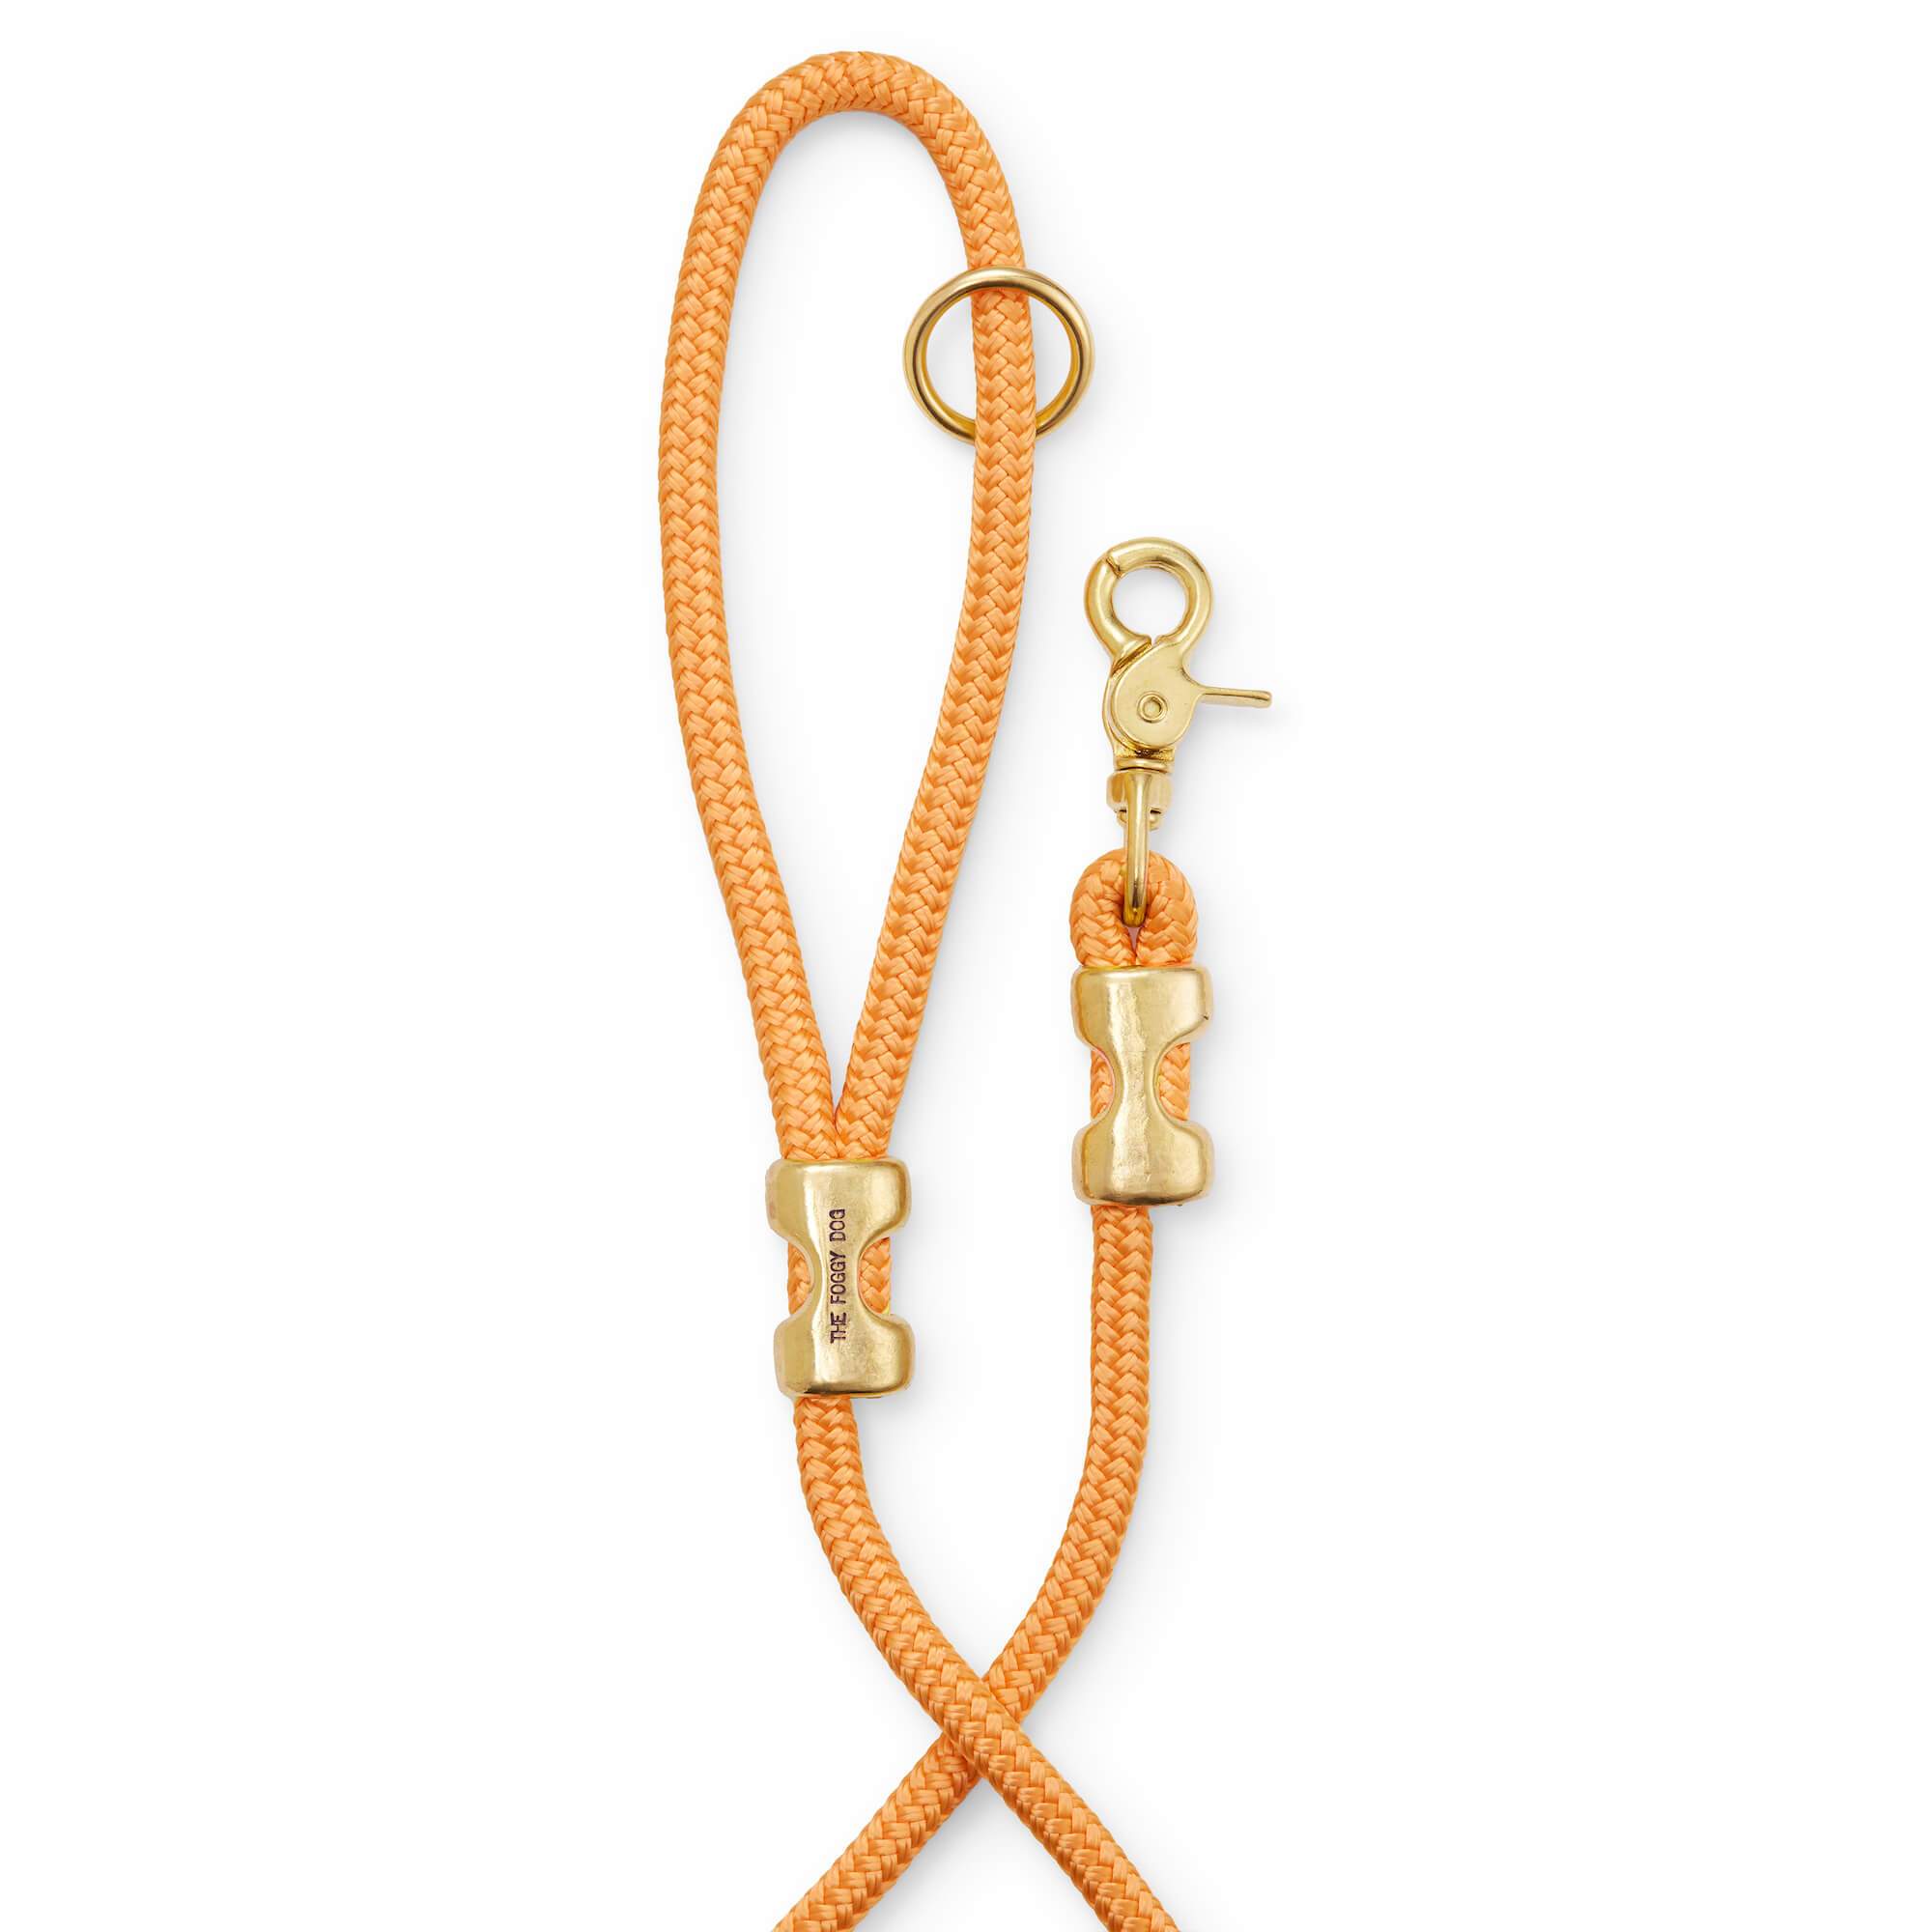 The Foggy Dog Goldenrod Marine Rope Dog Leash